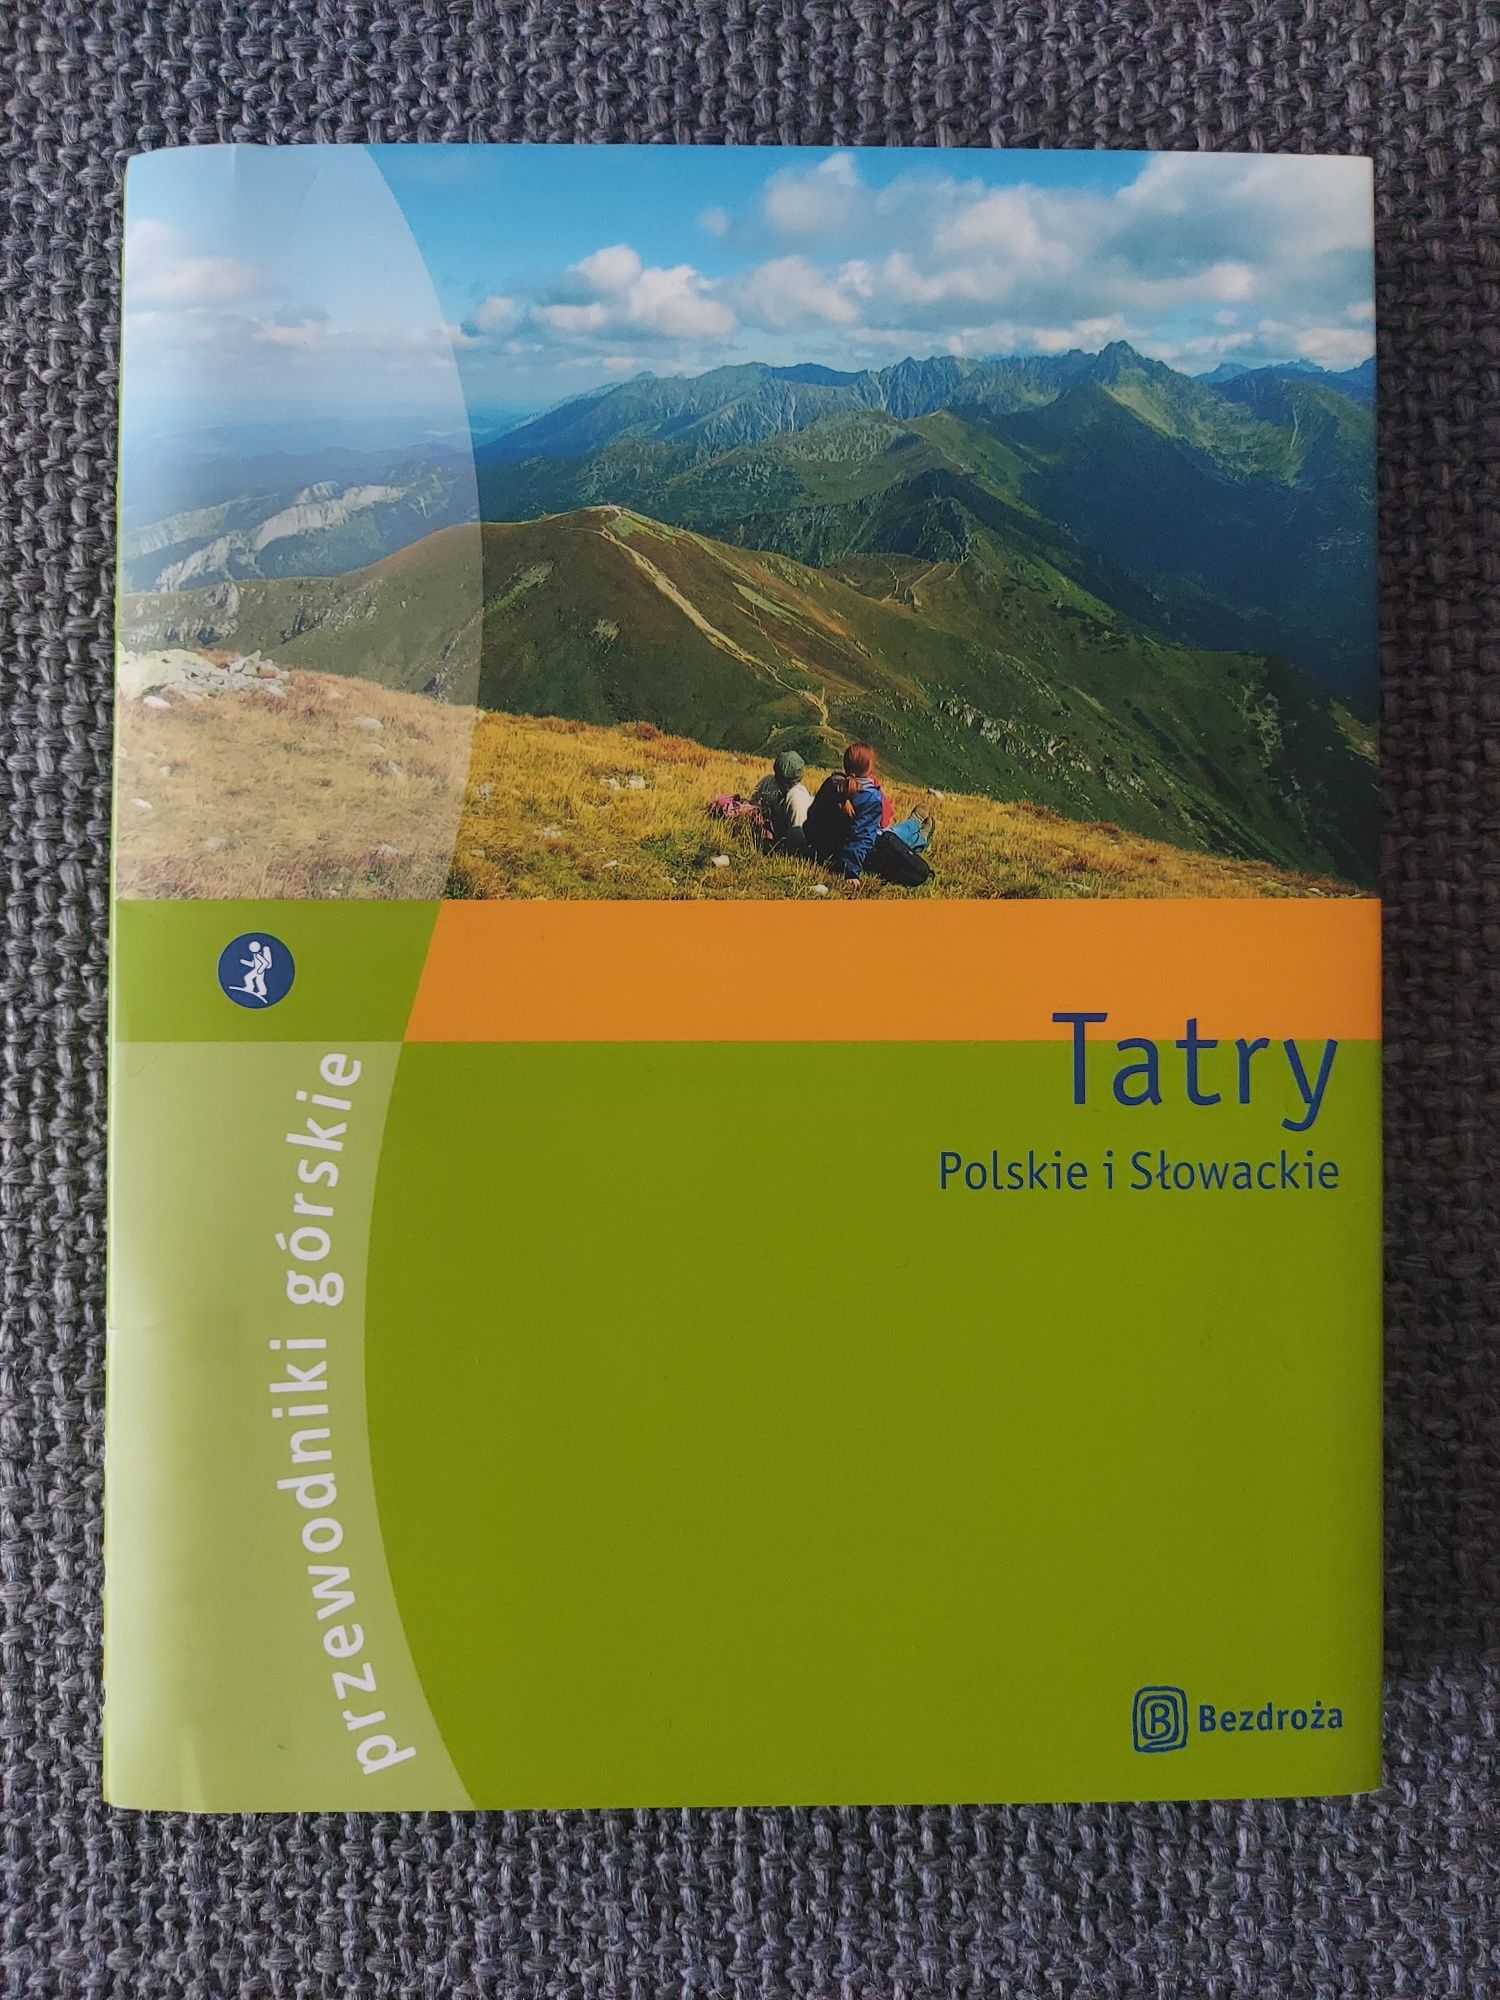 Tatry Polskie i Słowackie przewodnik górski